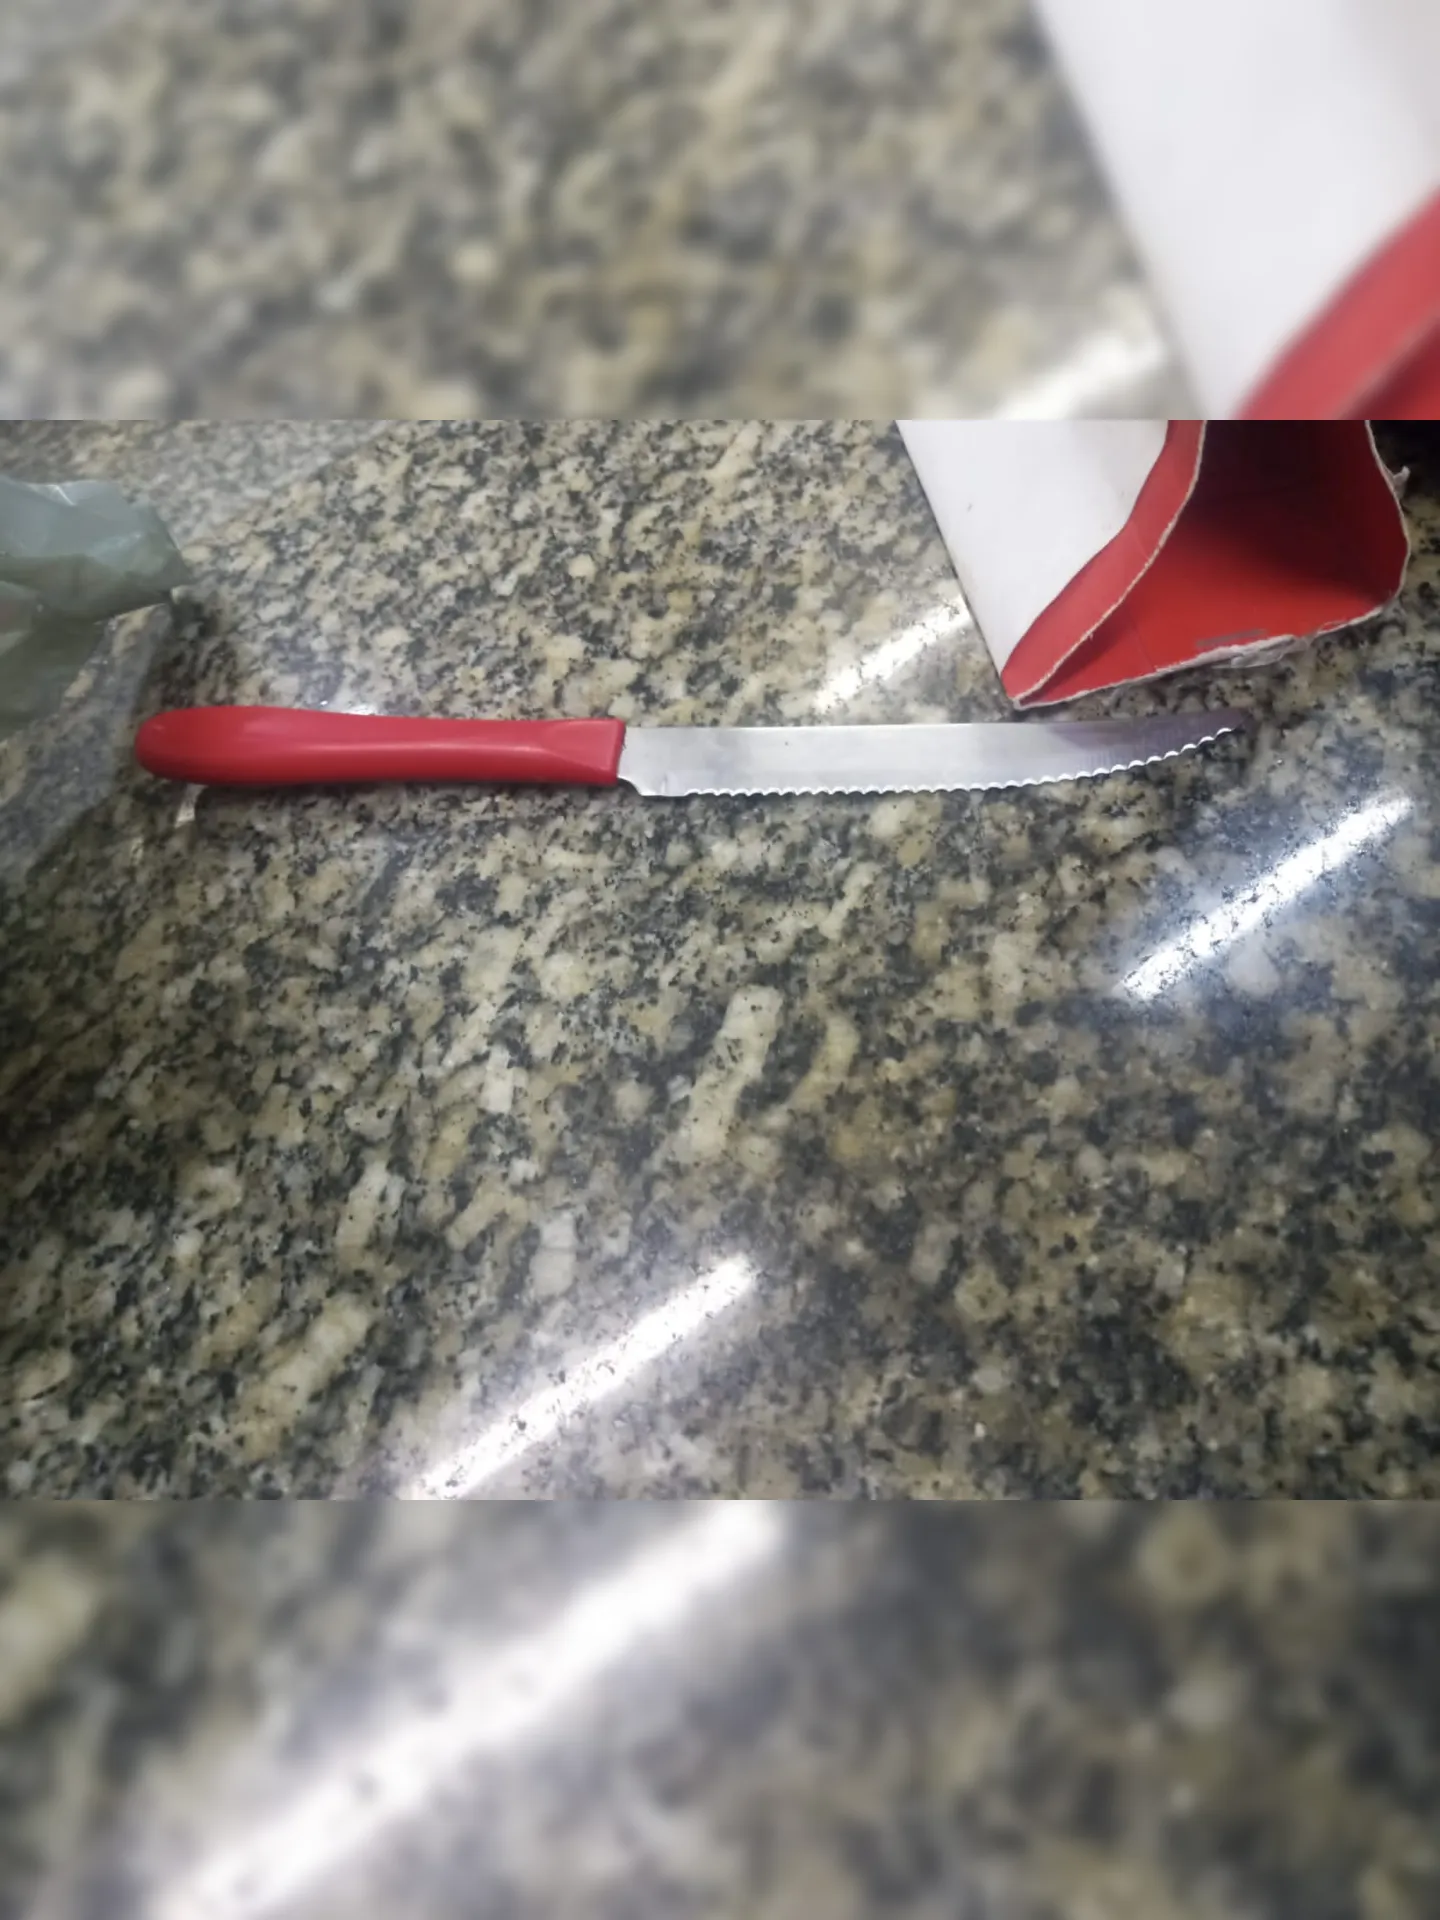 Suspeito usou faca de cozinha para machucar as vítimas